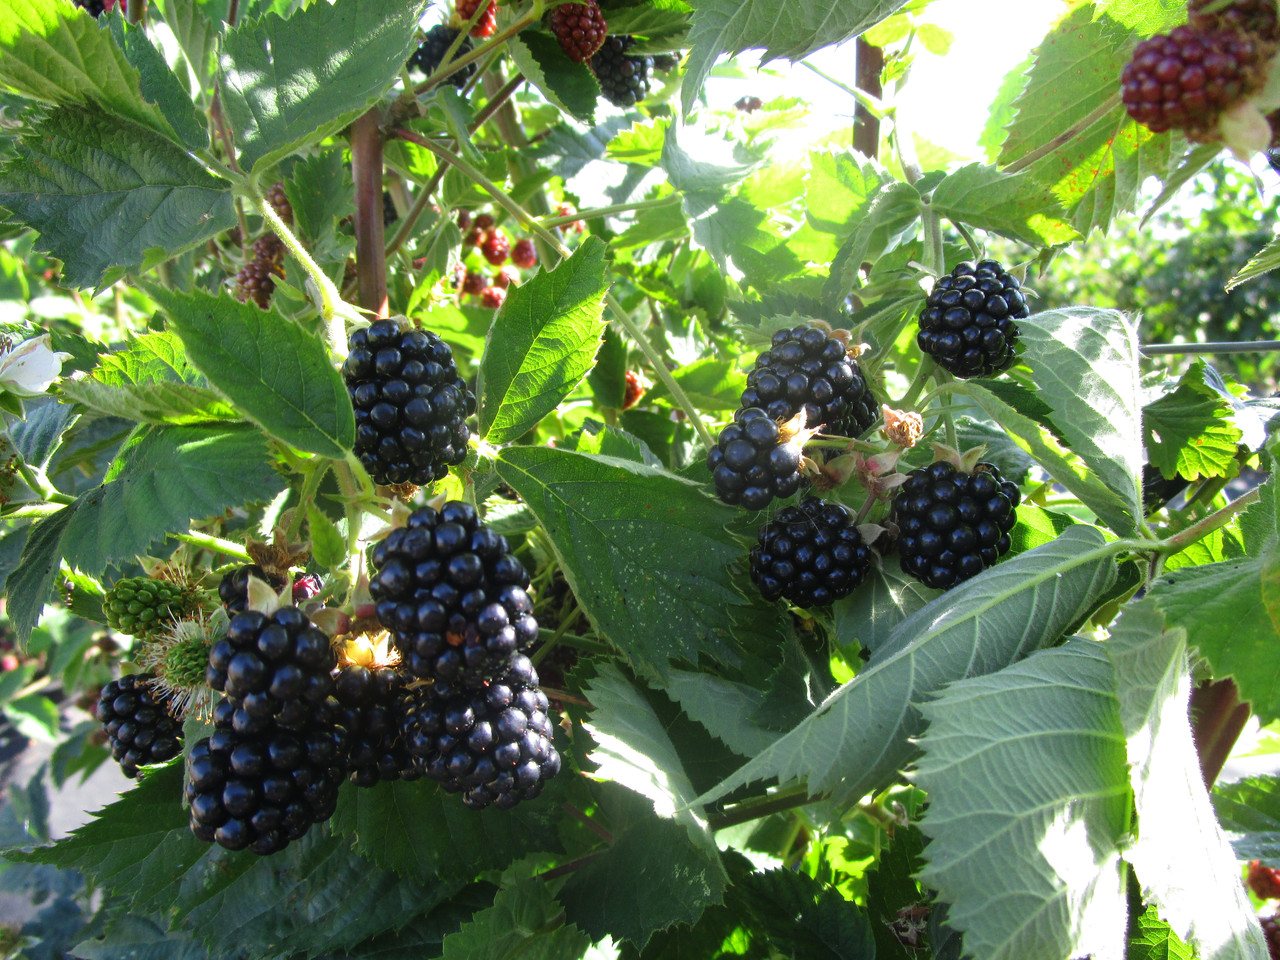 blackberries are the best varieties